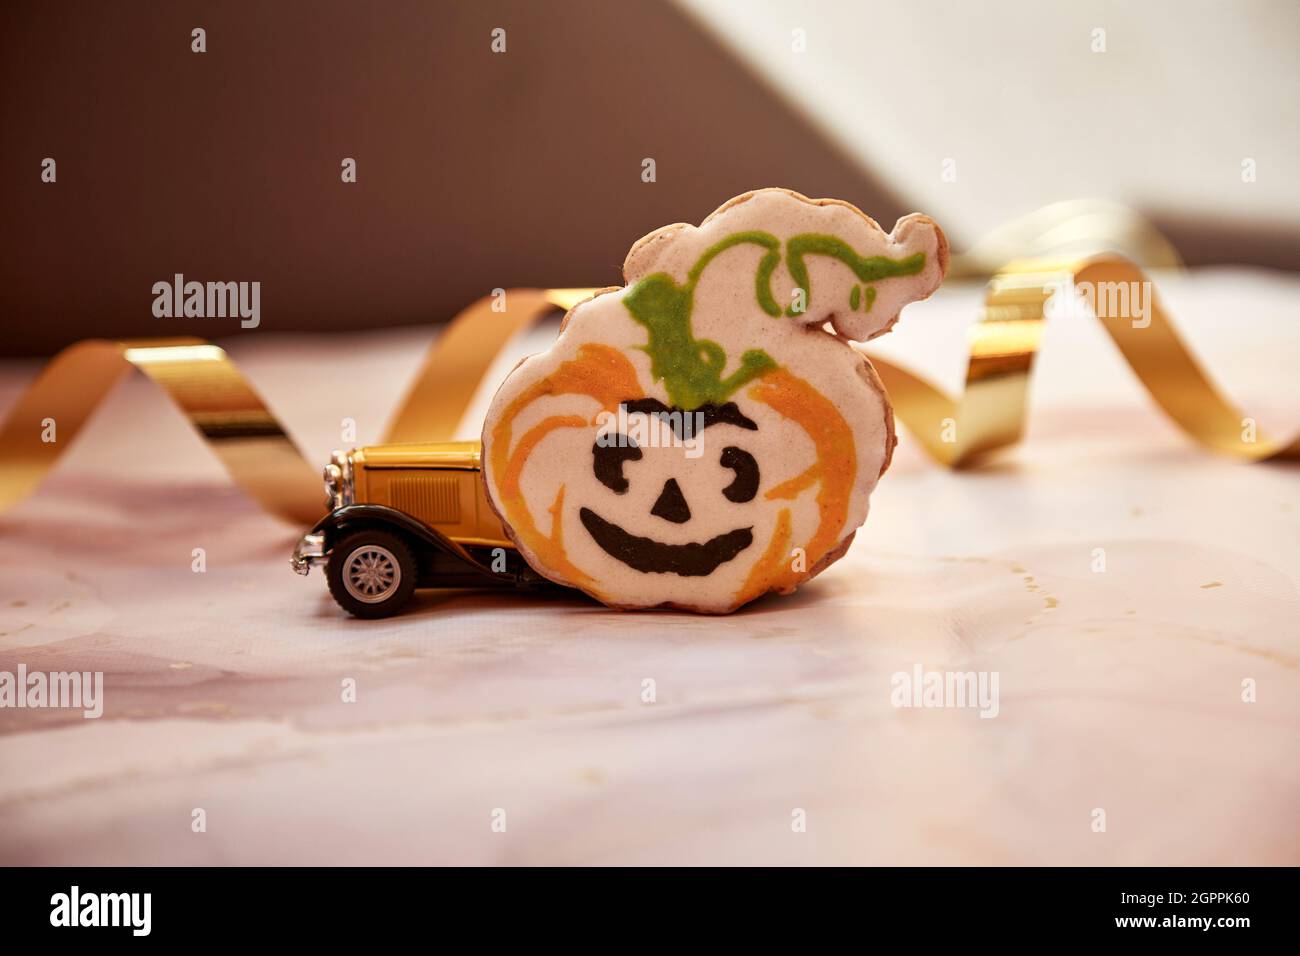 Décors d'Halloween avec mug à motif citrouille orange, biscuit à la main, citrouilles feulées et voiture rétro jaune. Joyeux Halloween concept de fête. Photo de haute qualité. Banque D'Images